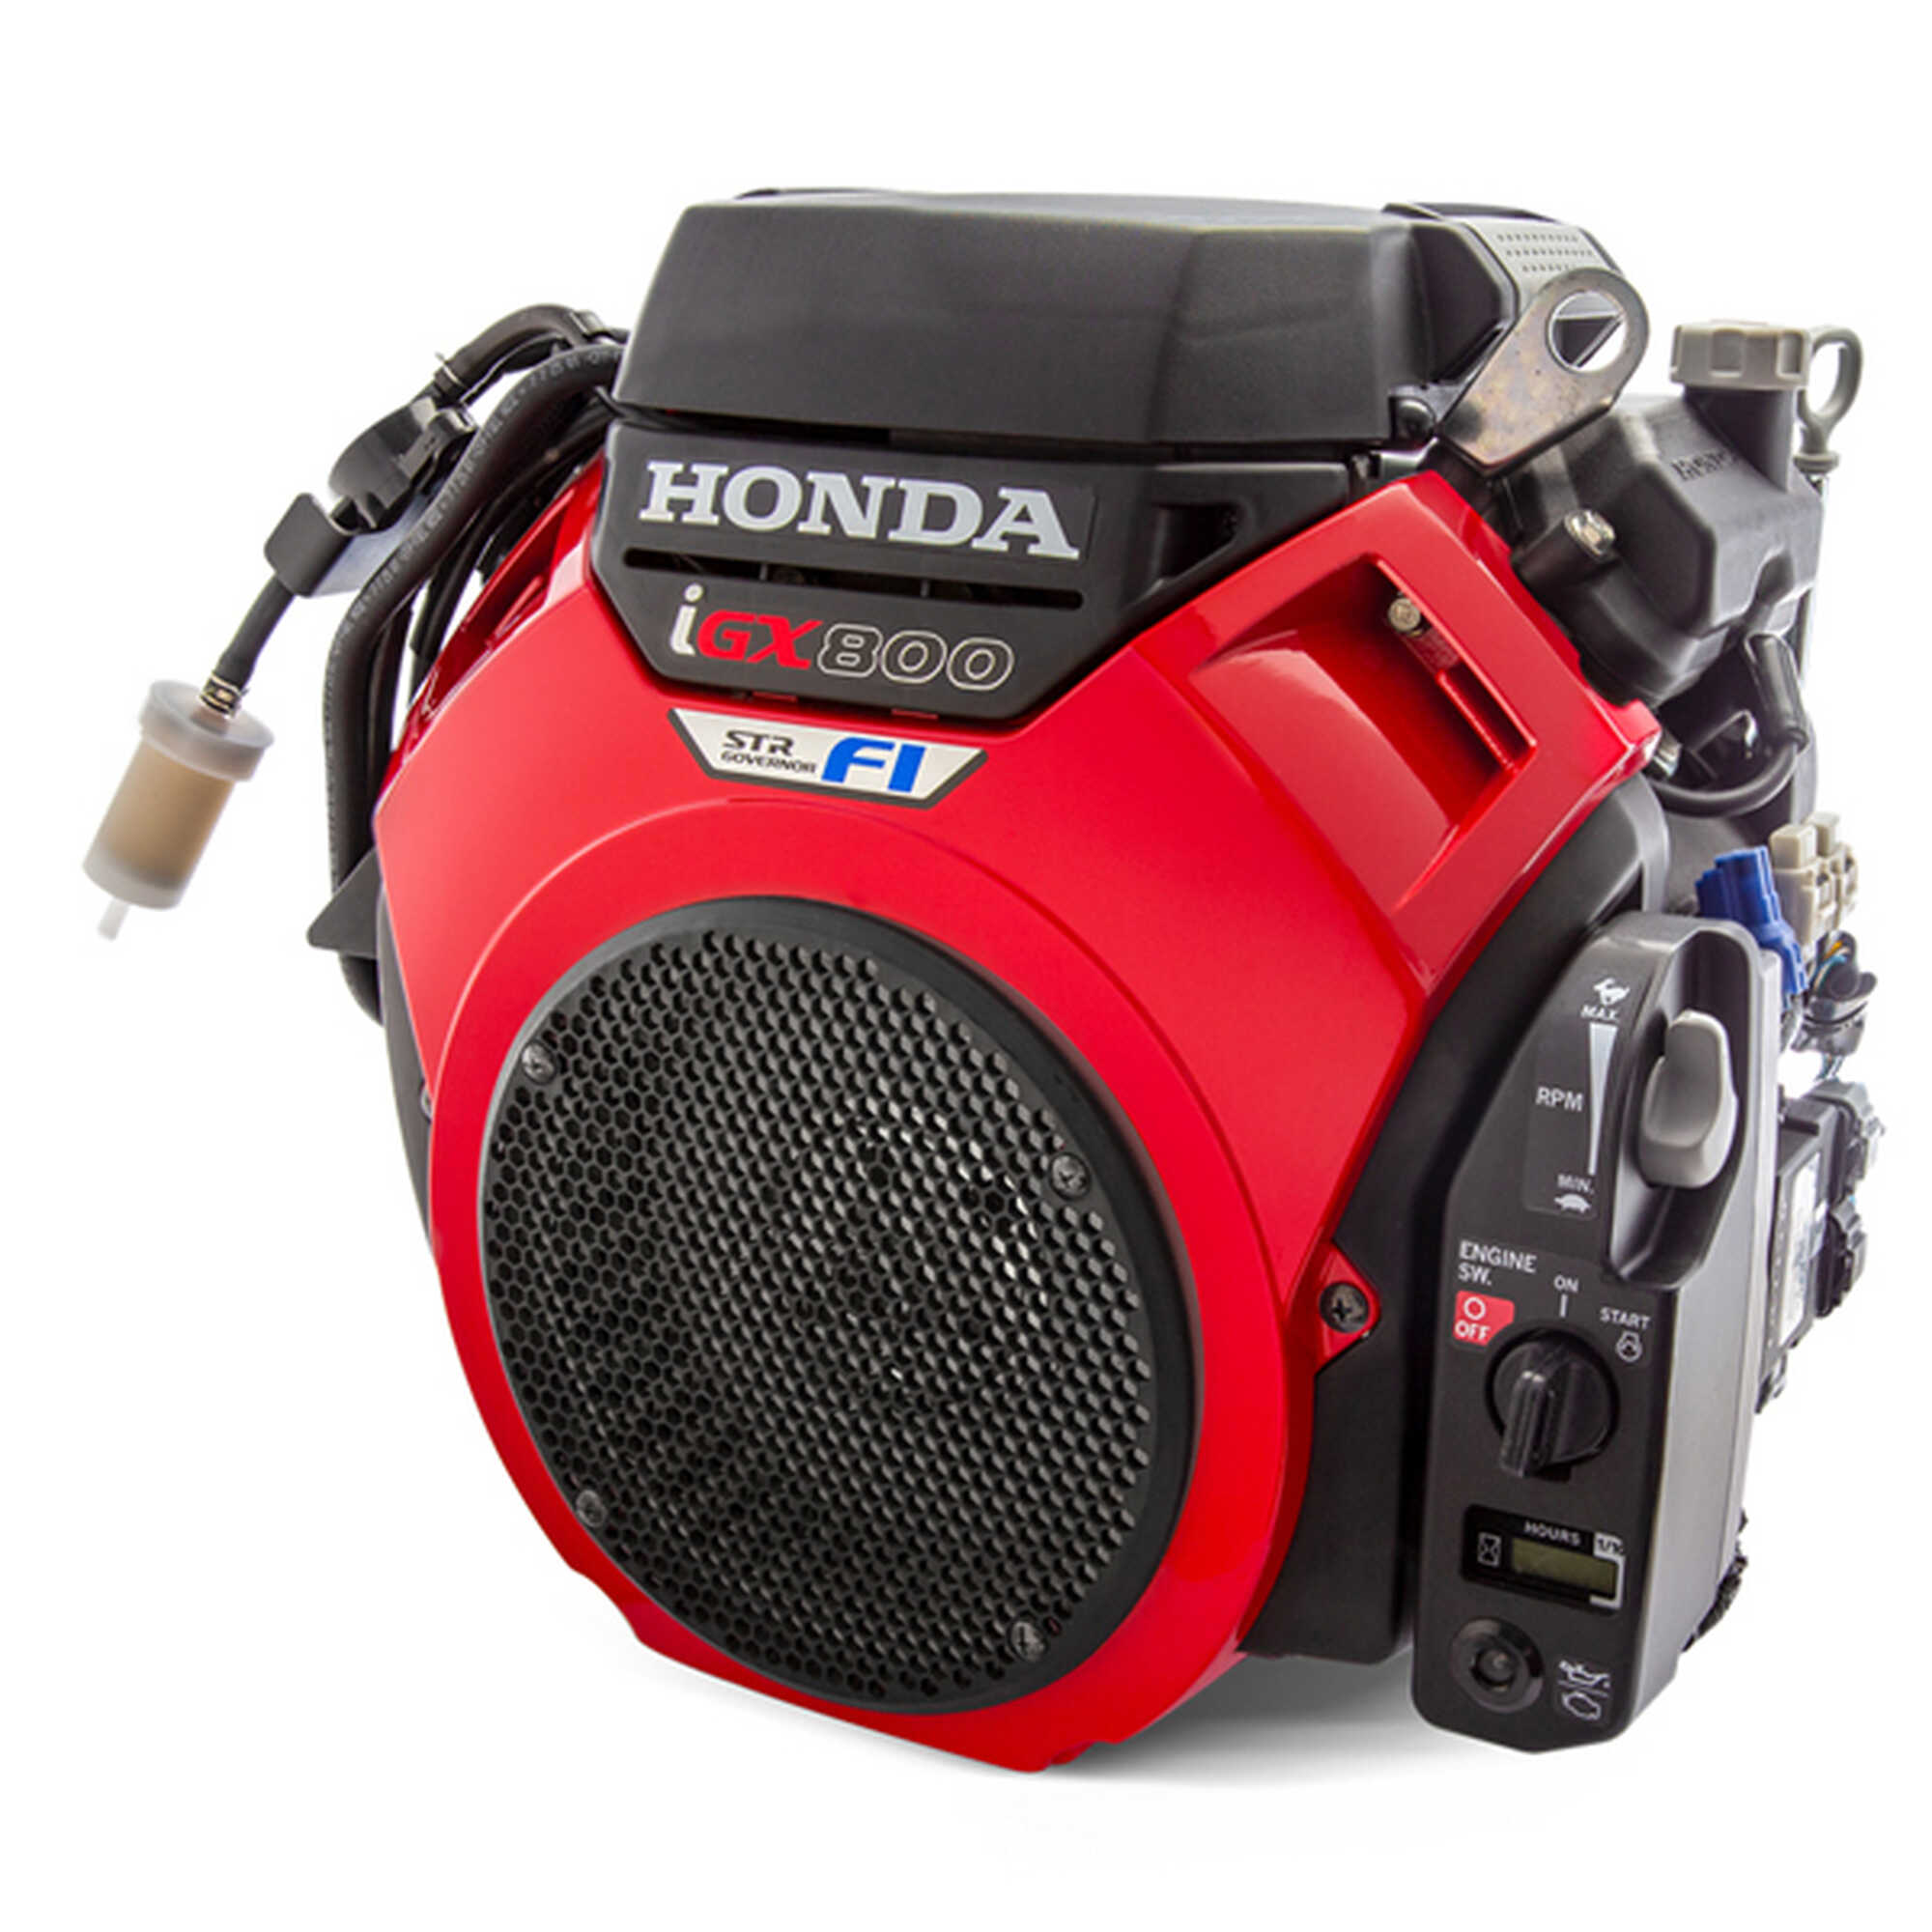 La Gamme Bicylindre Honda s’agrandit avec 2 nouveaux modèles moteurs à injection électronique de carburant ... Lorsque la fiabilité rencontre l’intelligence